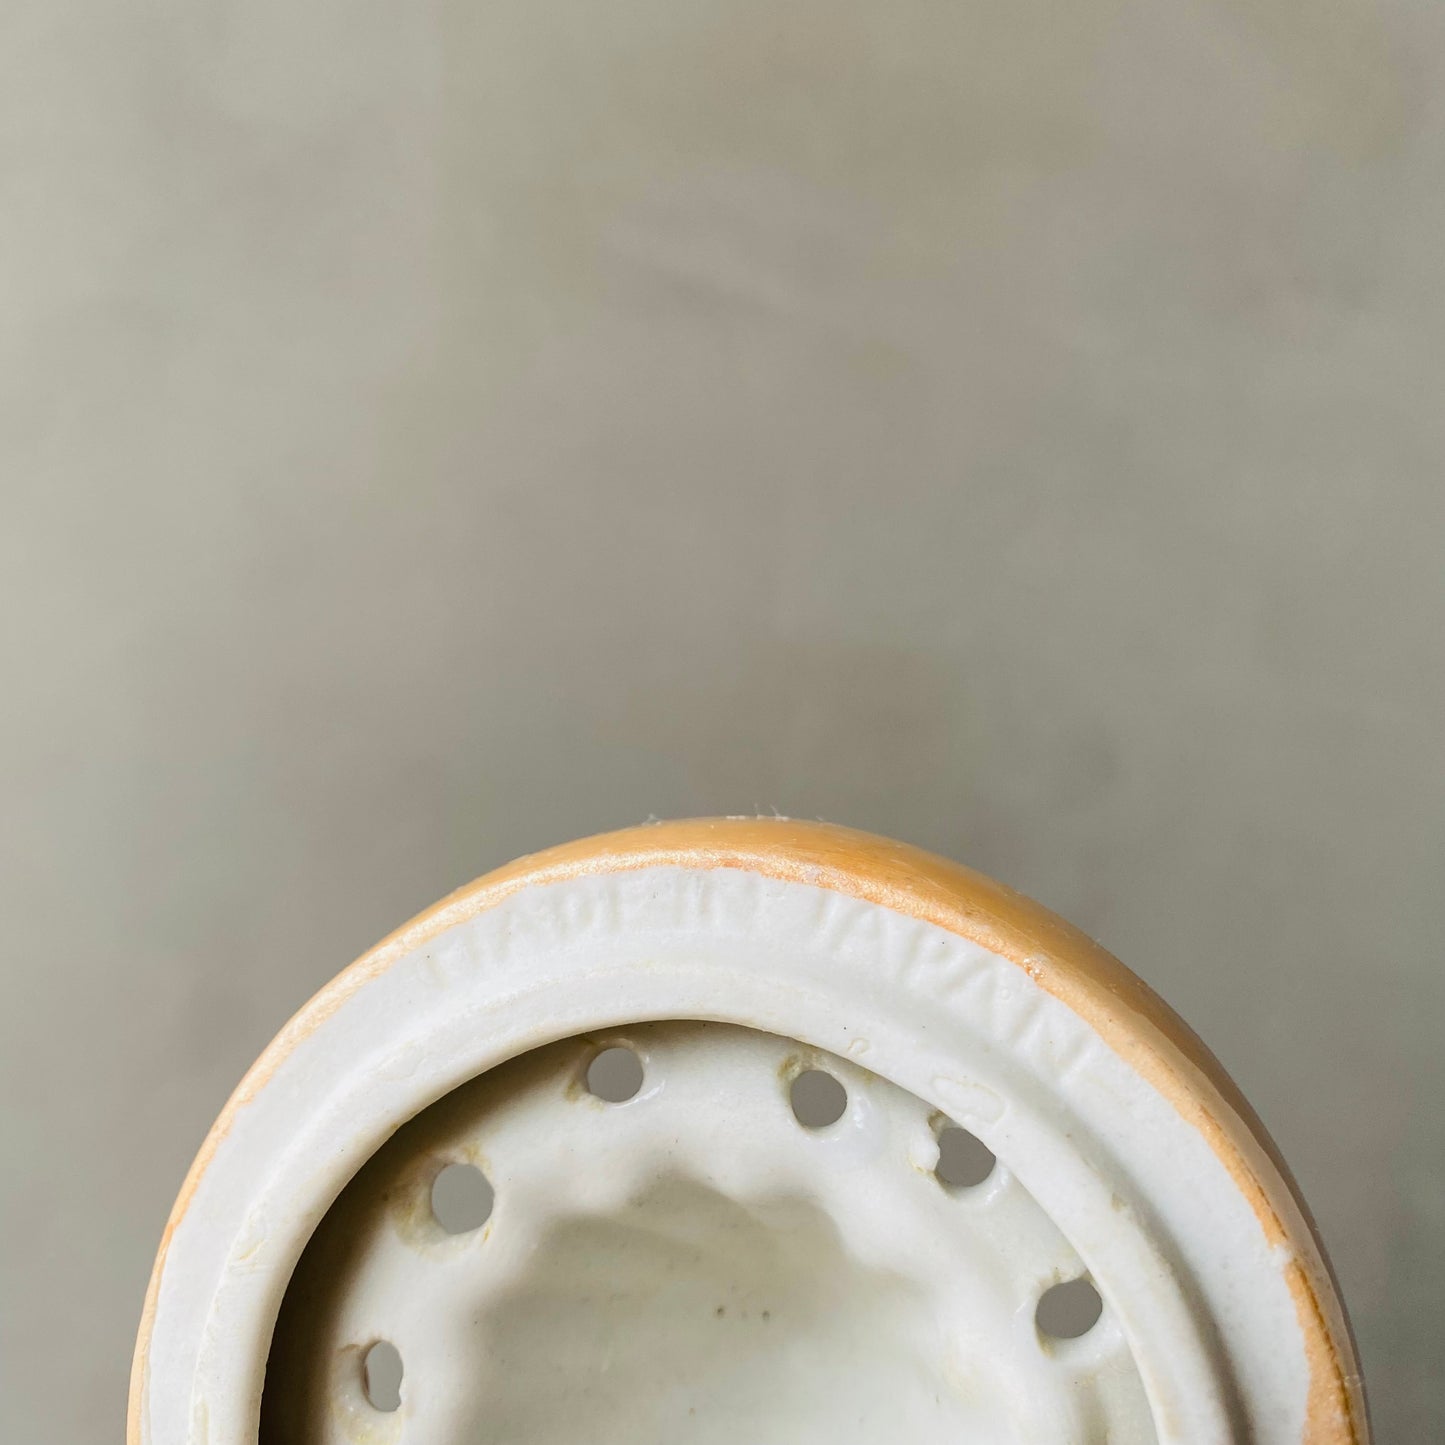 【1940s-1950s vintage】ceramic juicer face